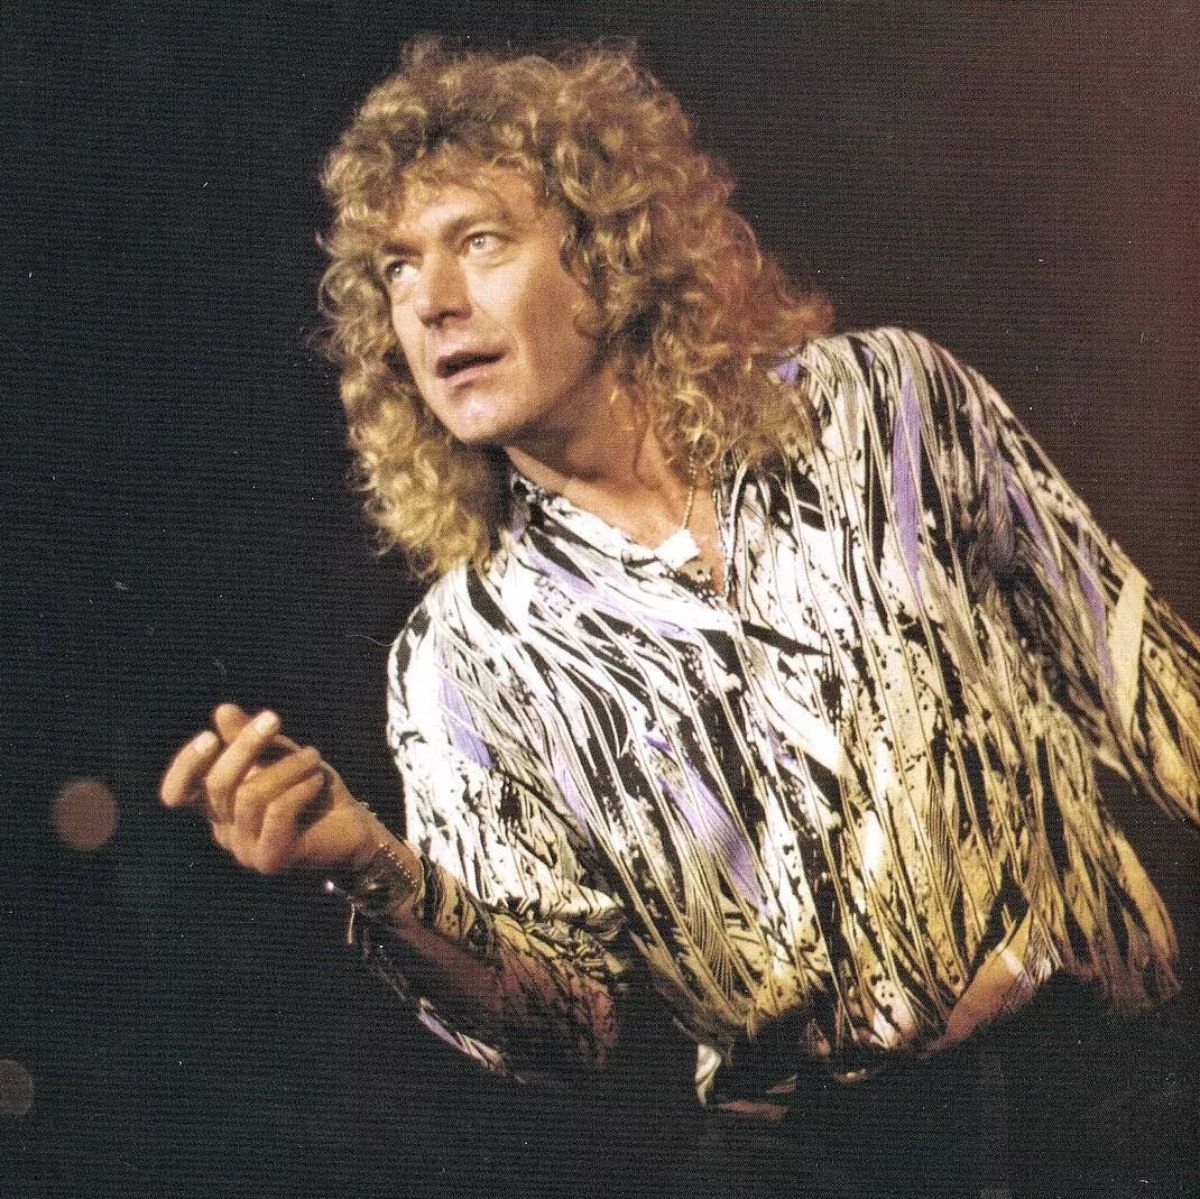 Big robert plant. Robert Plant 1988. Robert Plant в молодости.